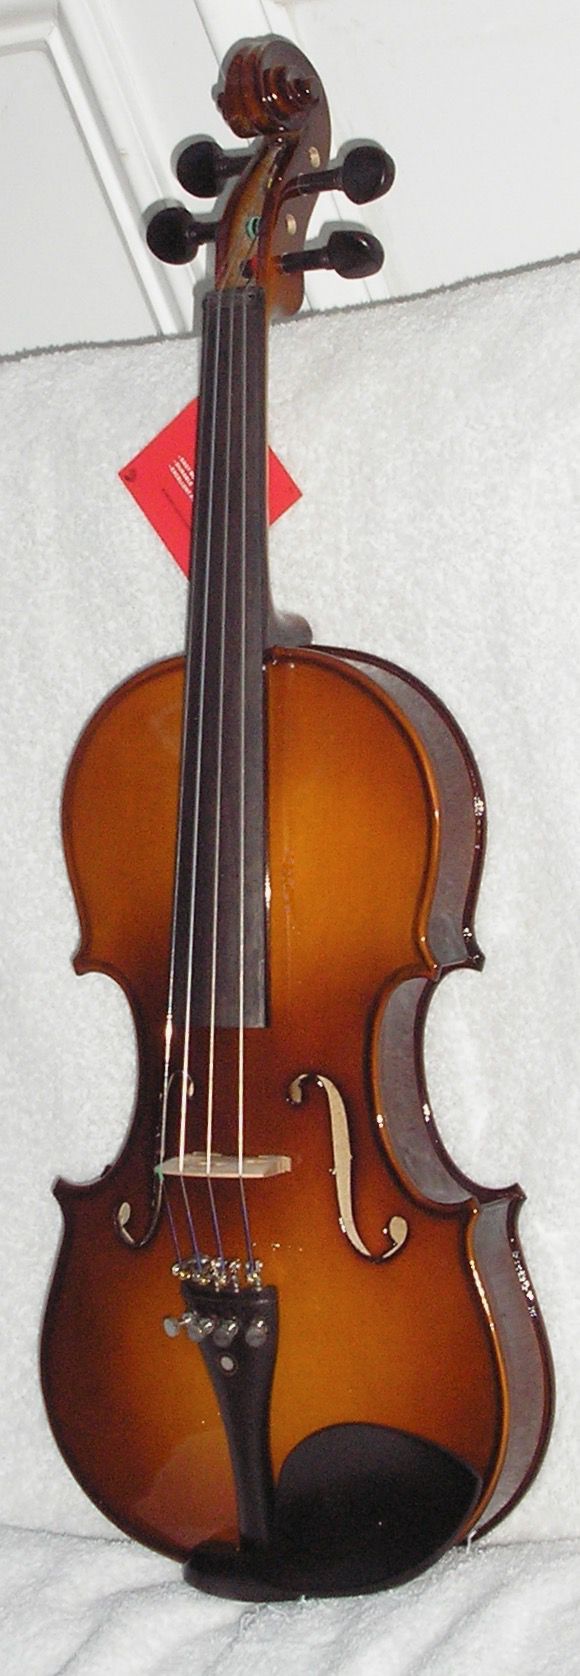 Lefty 4/4 Violin by Cecilio